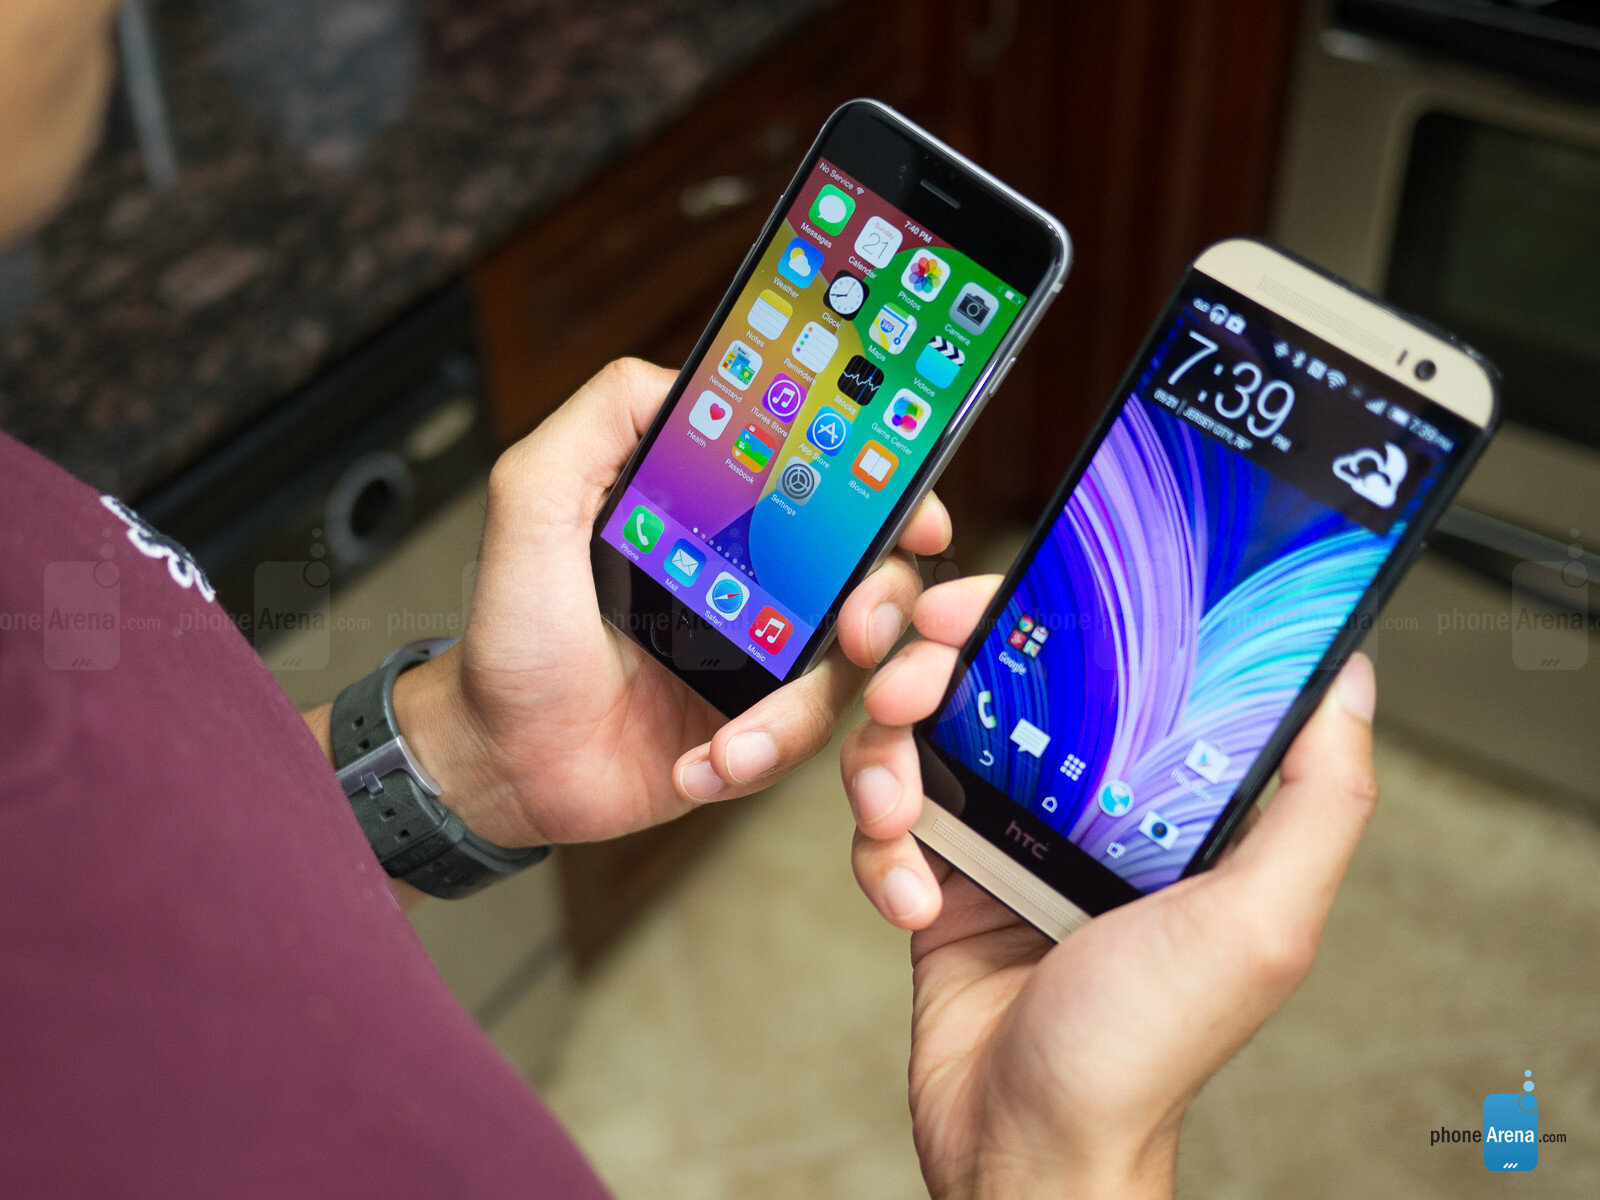 So sánh những điểm thiệt hơn của HTC One E8 với siêu phẩm iPhone 6